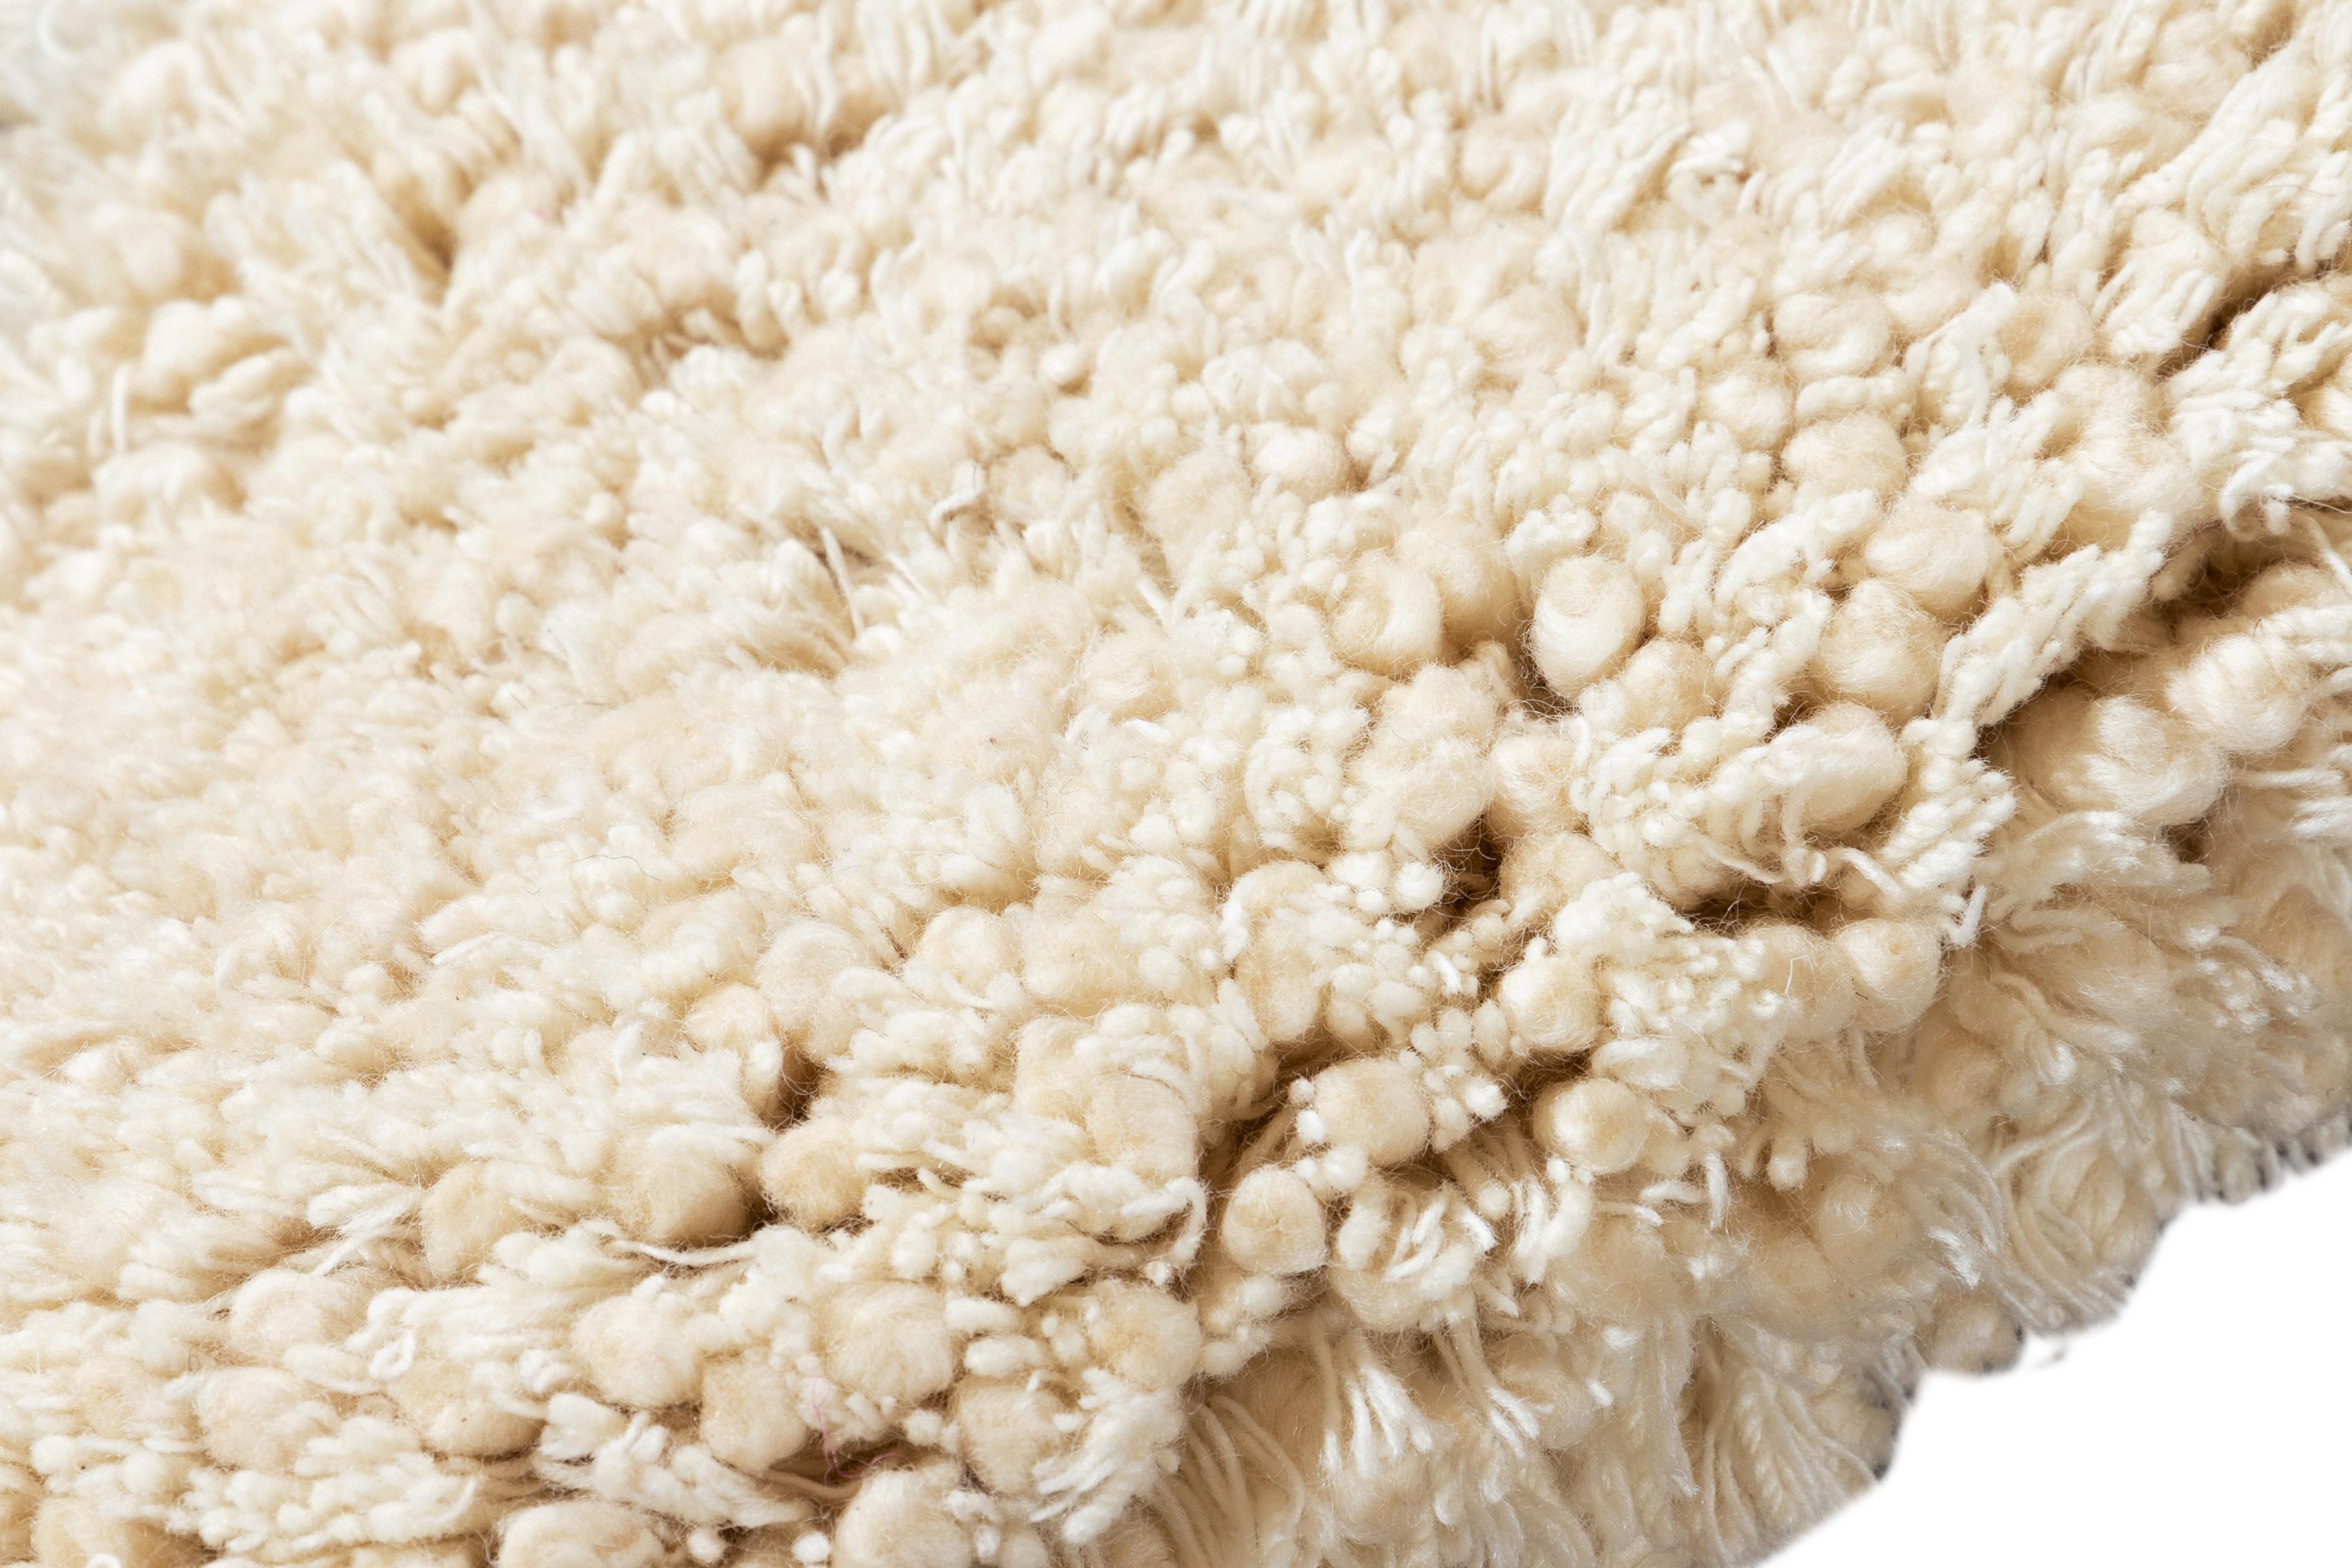 Texturierter Shag-Teppich aus Wolle. Kundenspezifische Größen und Farben auf Bestellung.

Material: Neuseeländische Wolle
Vorlaufzeit: Ungefähr 12 Wochen
Verfügbare Farben: Wie abgebildet; andere benutzerdefinierte Farben und Stile